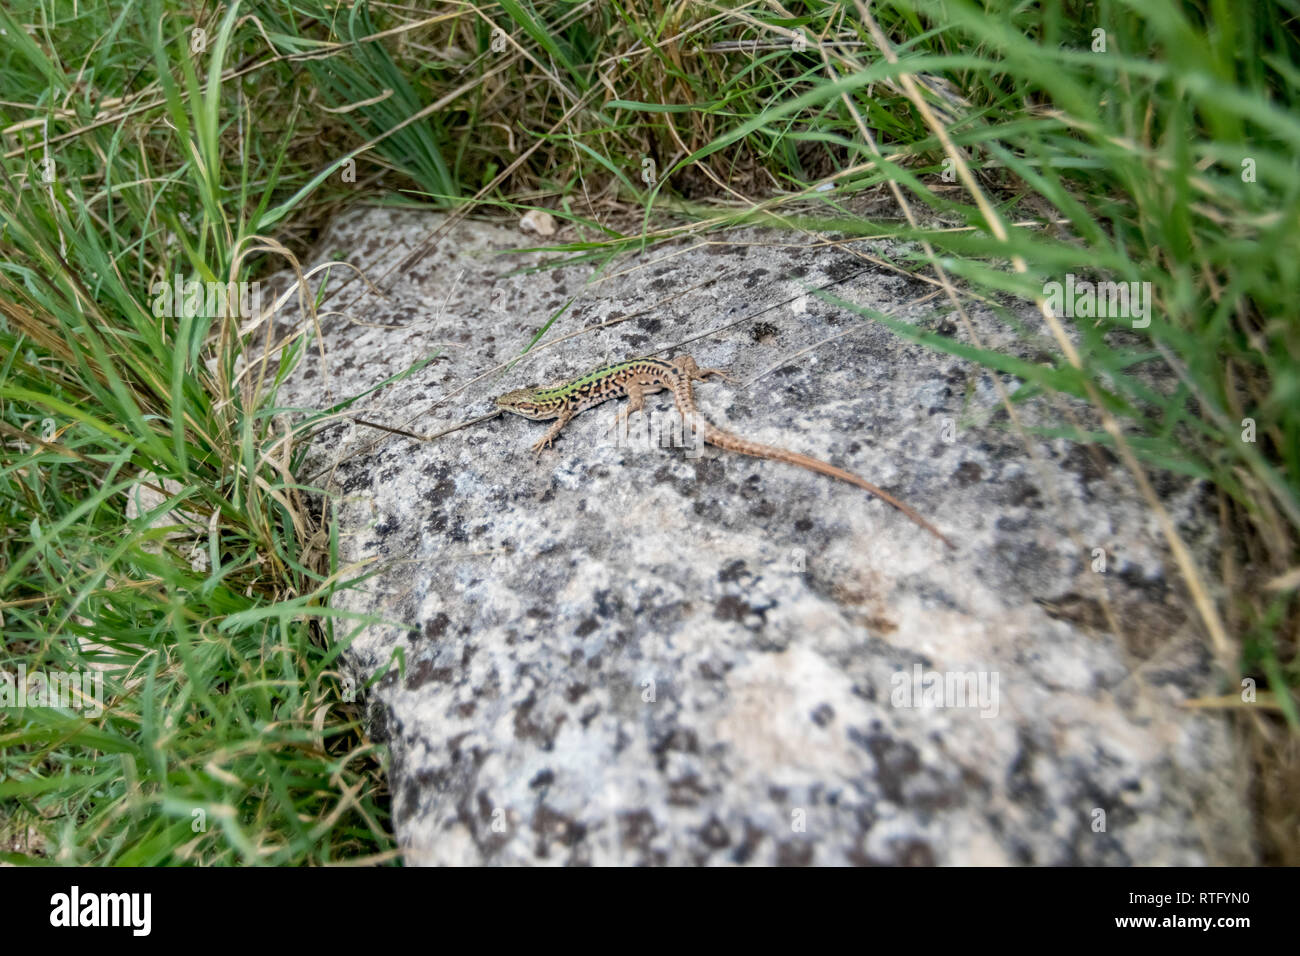 Matera, Italien, lebendgebärenden Lizard oder gemeinsamen Eidechse, Zootoca vivipara, vormals Lacerta vivipara, ruht auf Granit mit grünem Gras um in Th Stockfoto